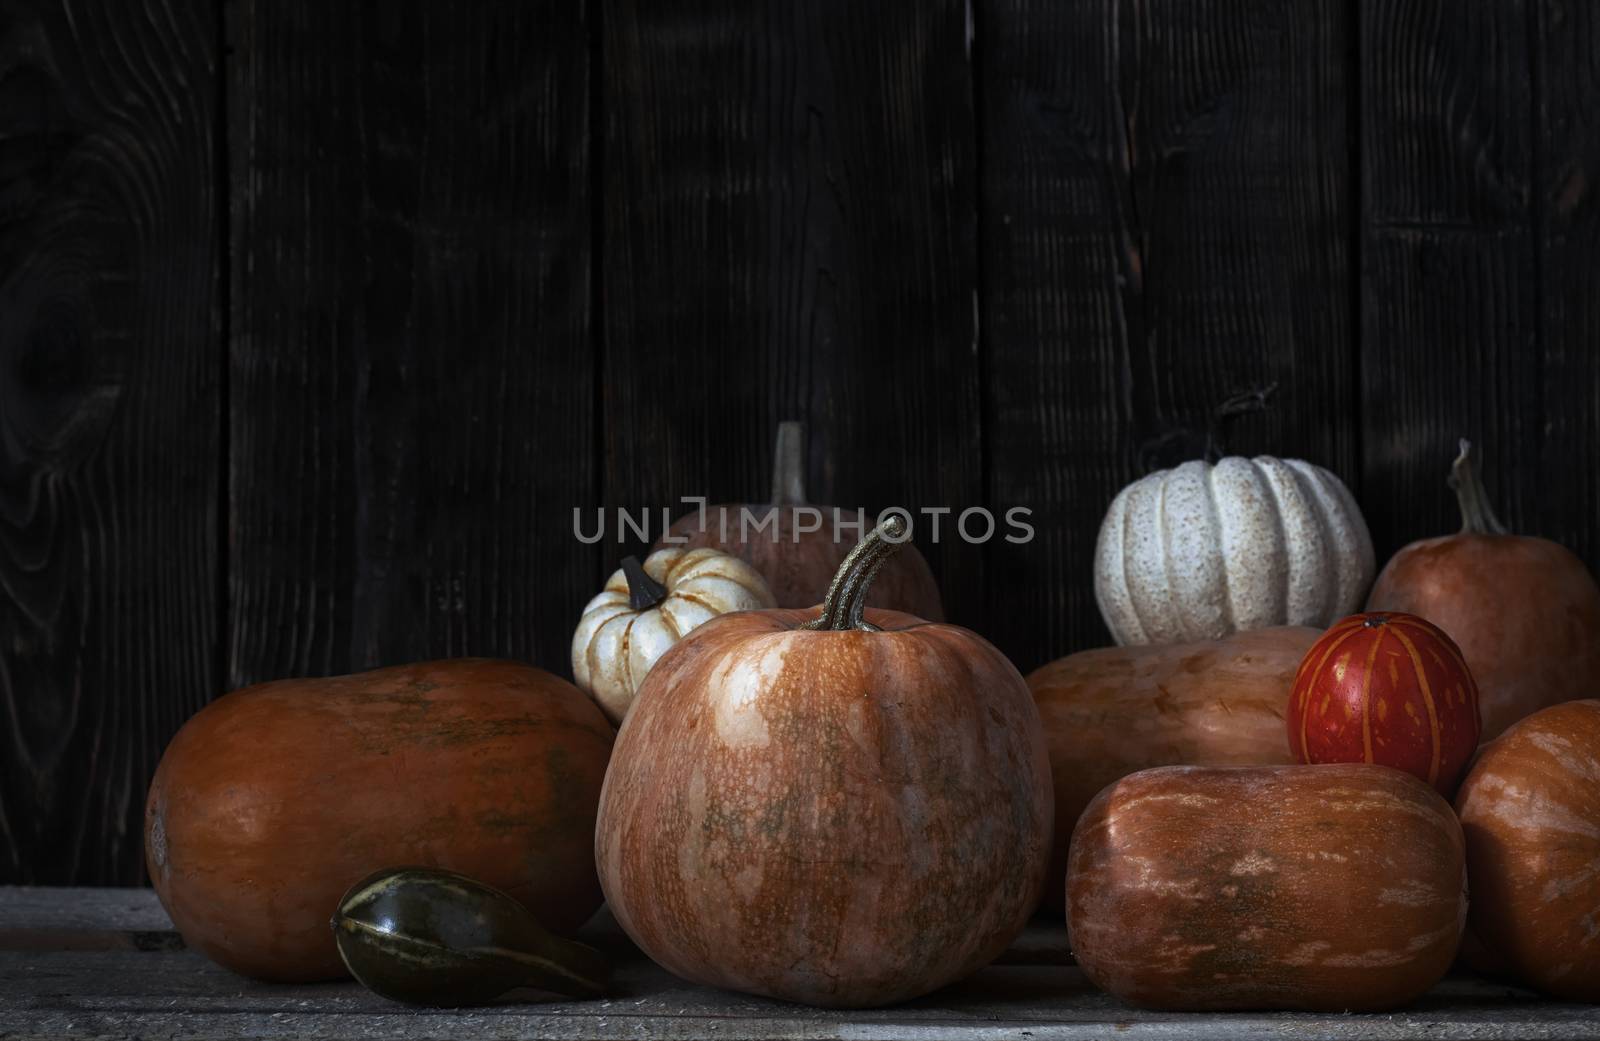 Stack of pumpkins after harvesting by Novic